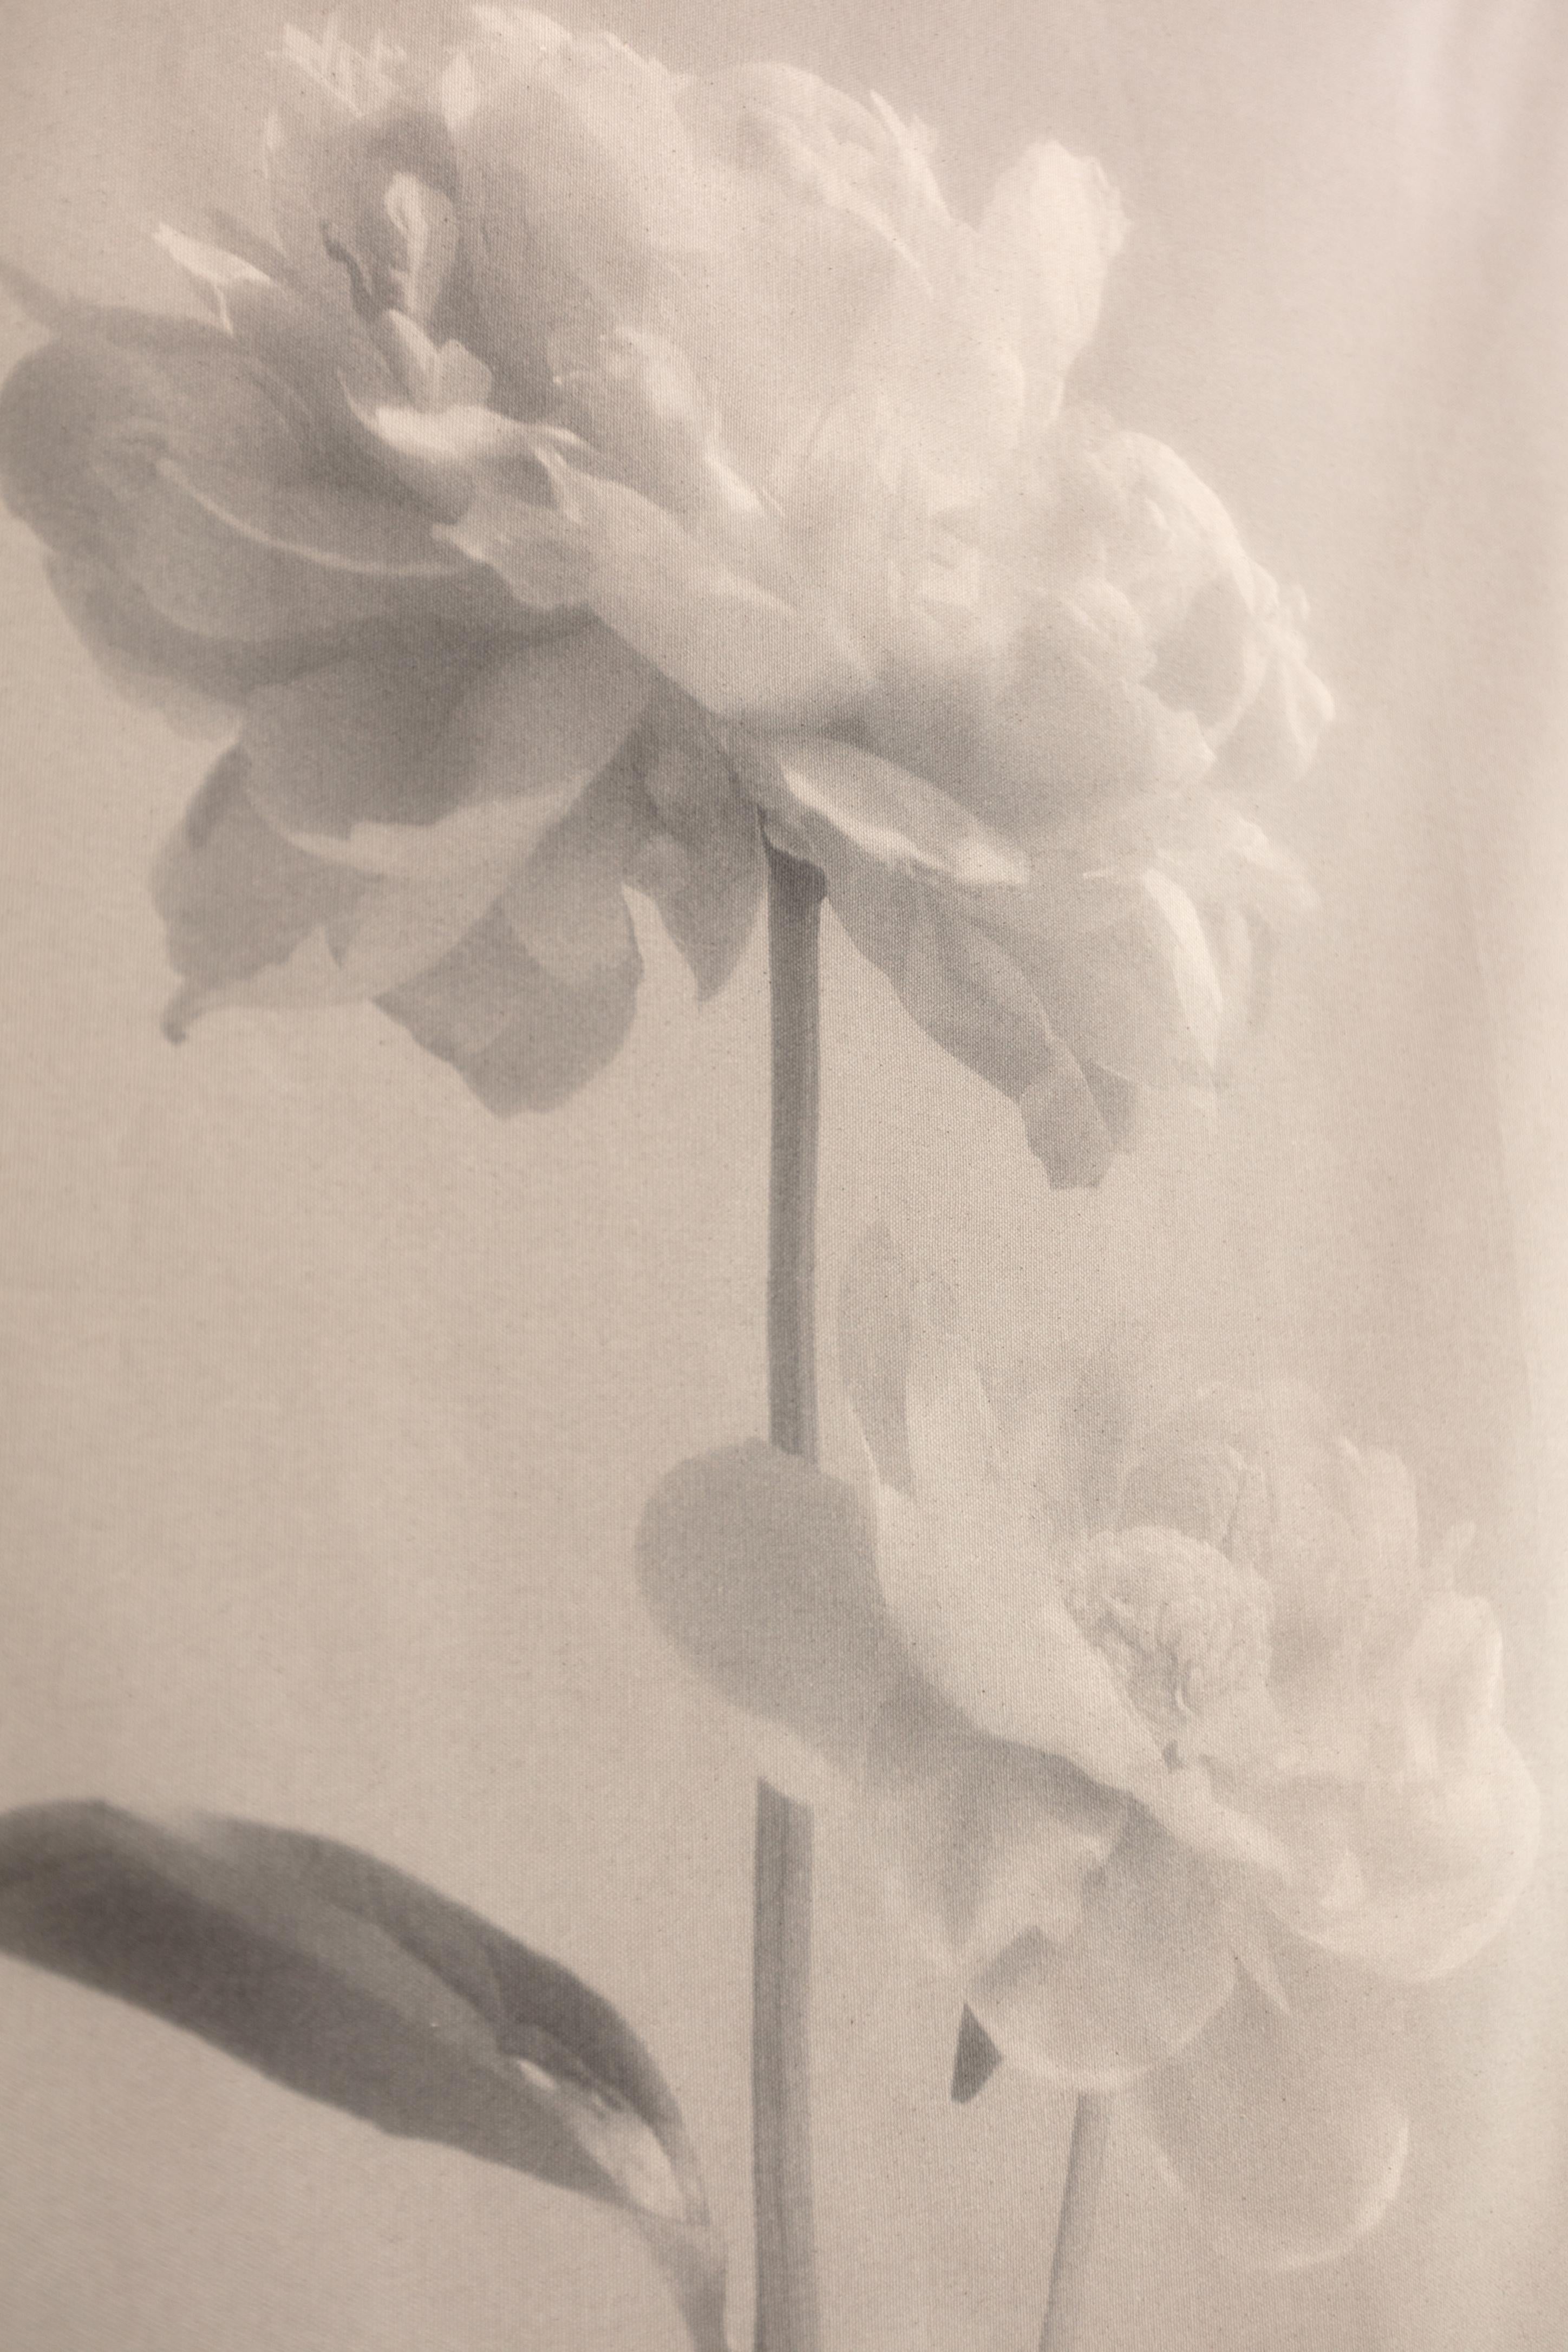 Baumwoll-Leinwandschnörkel „Peony no.2“, Blumenfotografie, limitierte Auflage 2 von 5 Stück – Photograph von Ugne Pouwell